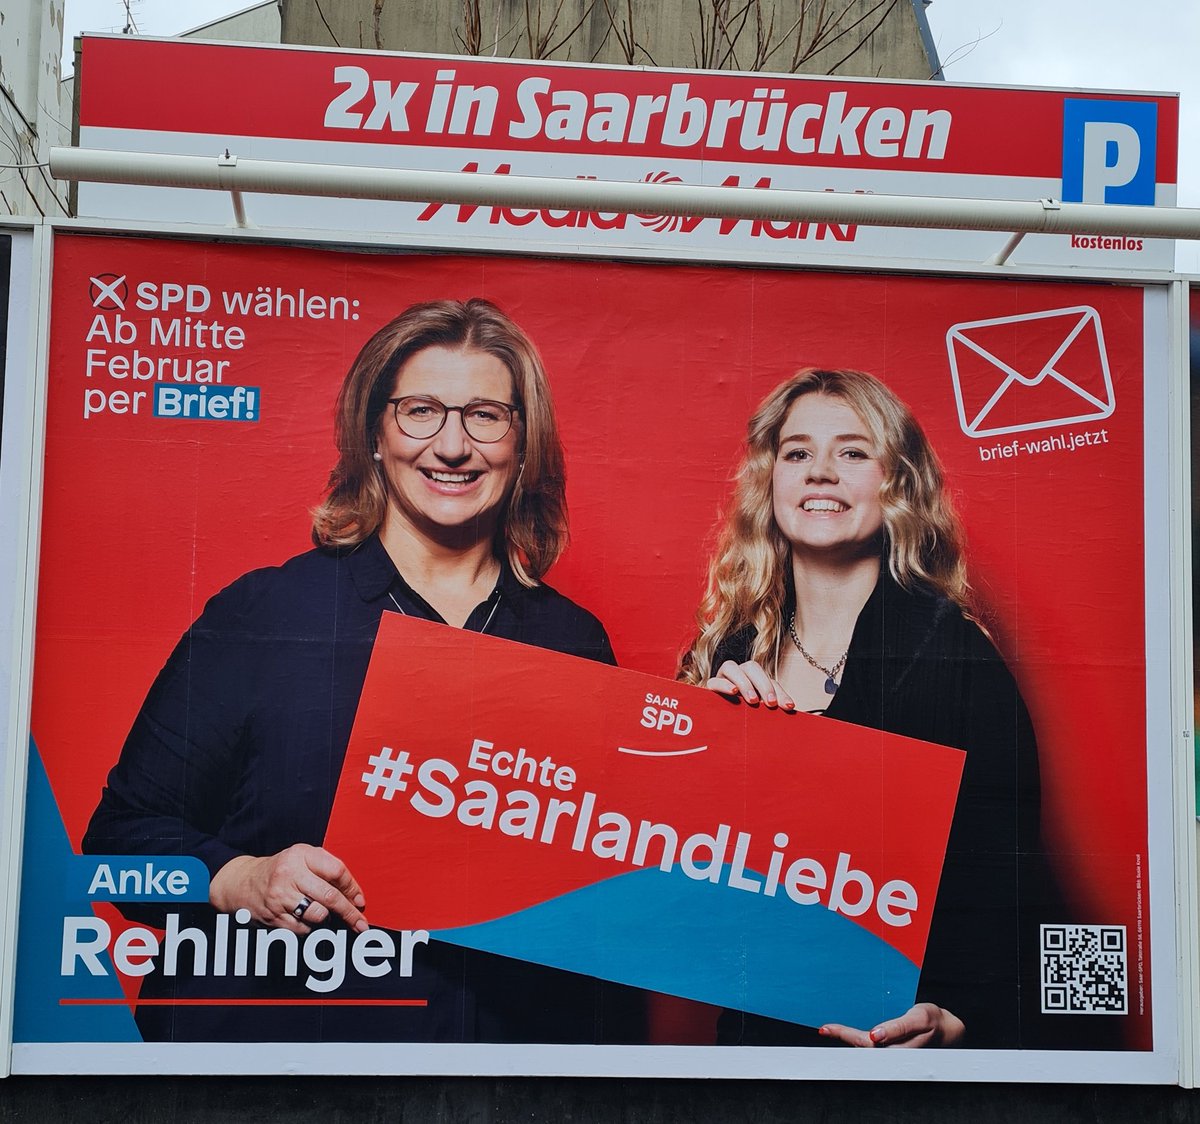 Ahhhh wie aufregend, erstes Plakat gesichtet 😱😍
@AnkeRehlinger for #Ministerpräsidentin im #Saarland ❤

#EchteSaarlandLiebe